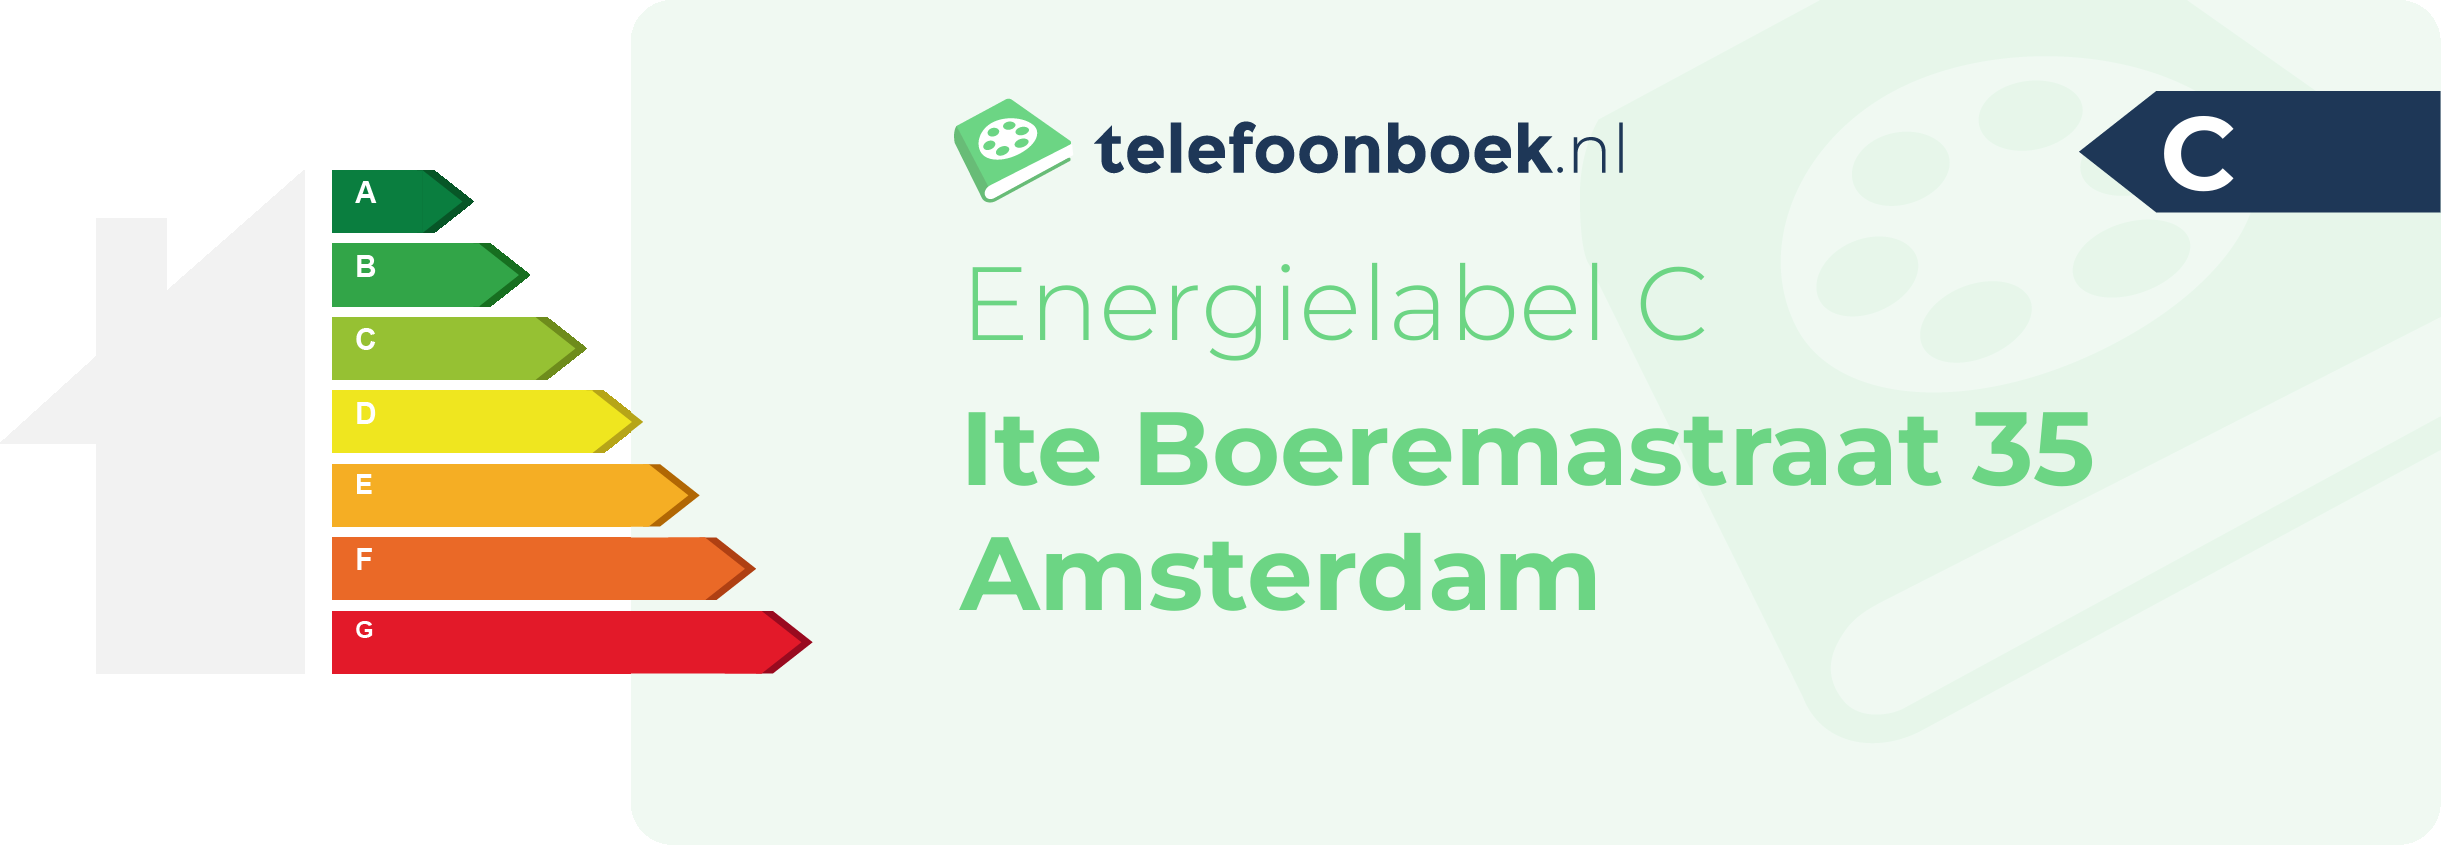 Energielabel Ite Boeremastraat 35 Amsterdam